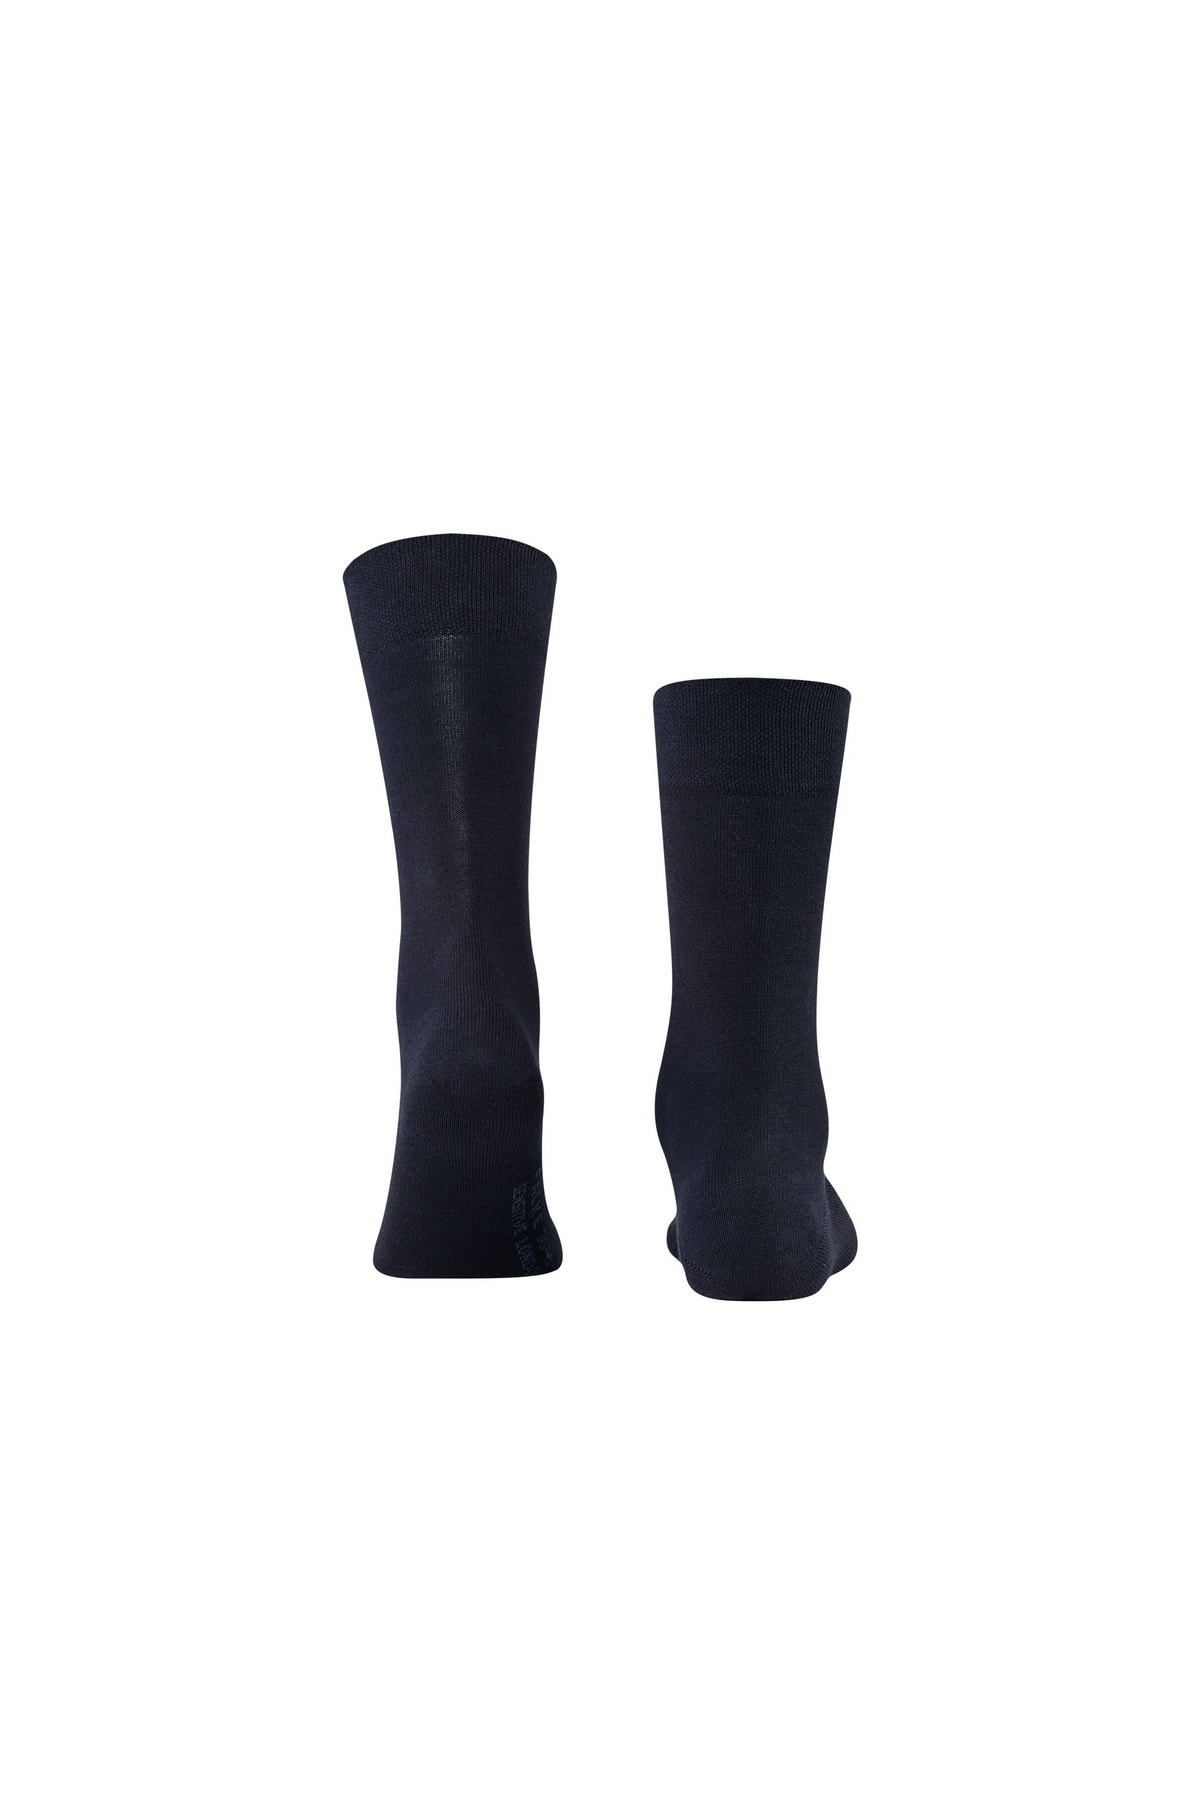 FALKE Socken Grau Casual für Herren - 43-46 Hersteller: Falke Bestellnummer: